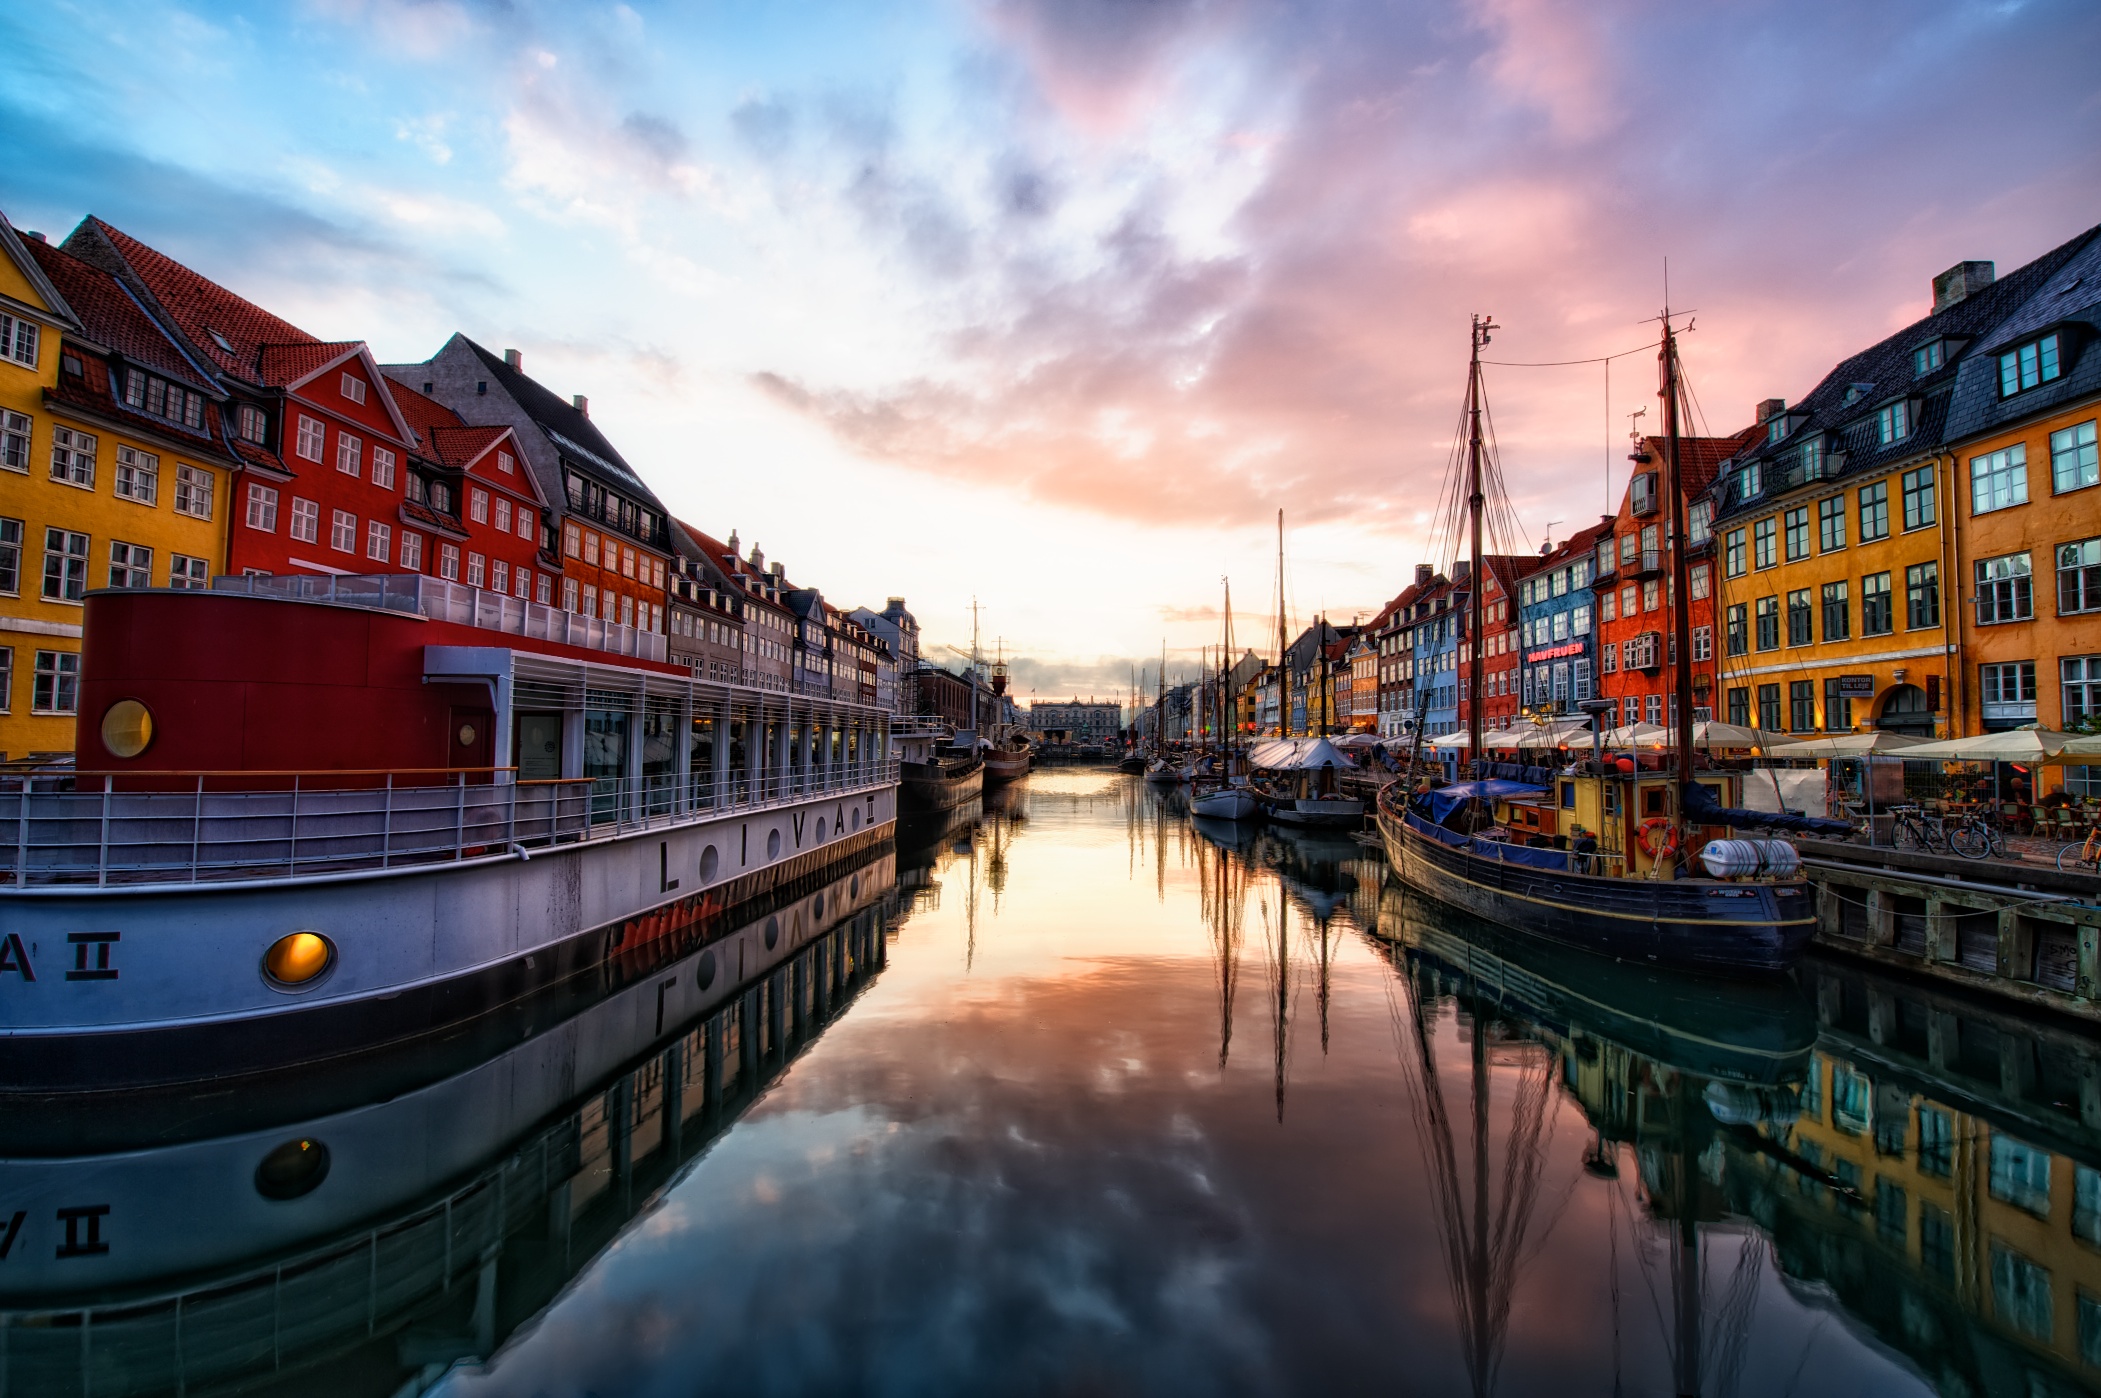 Sunset at Nyhavn - Copenhagen Denmark